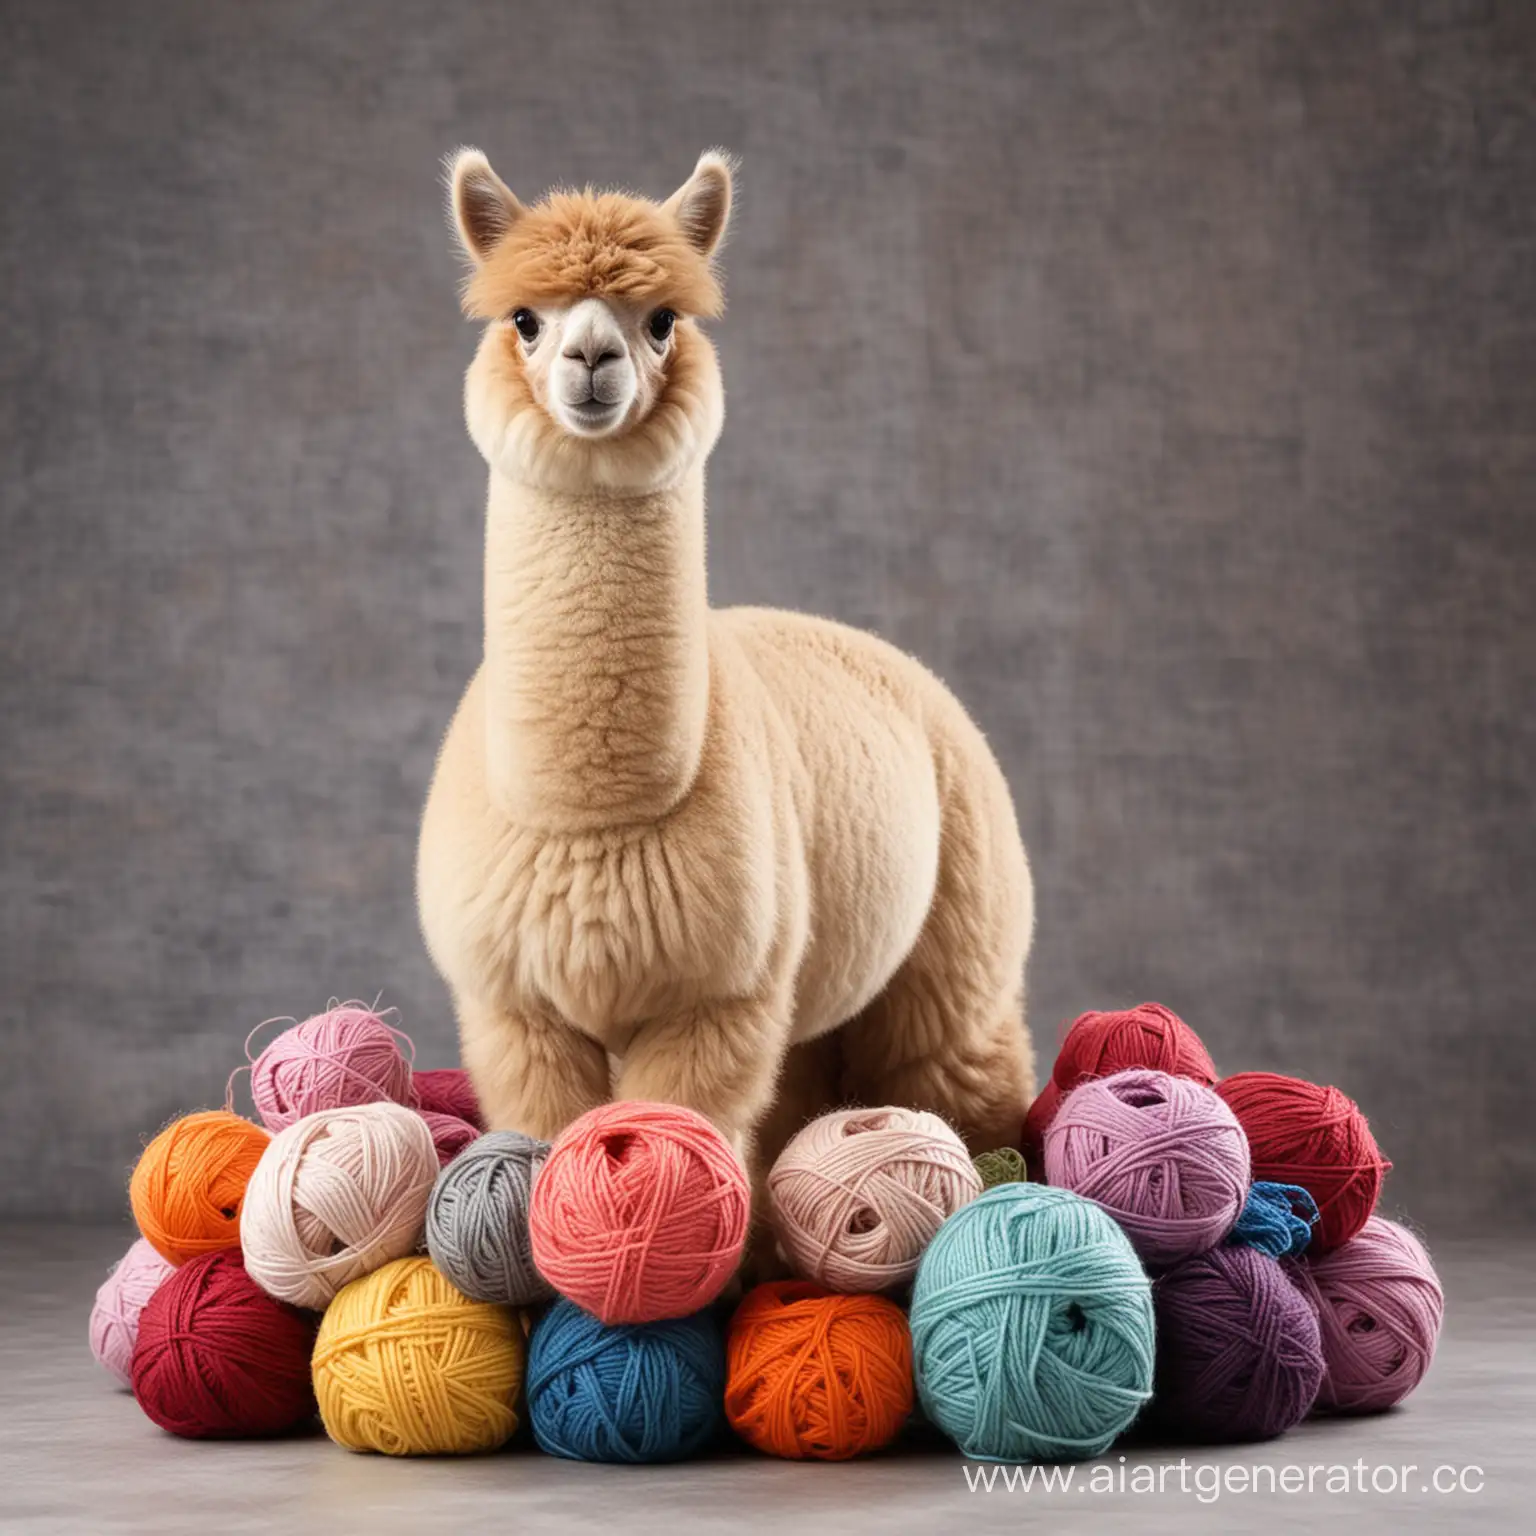 Graceful-Alpaca-Standing-on-Colorful-Skeins-of-Yarn